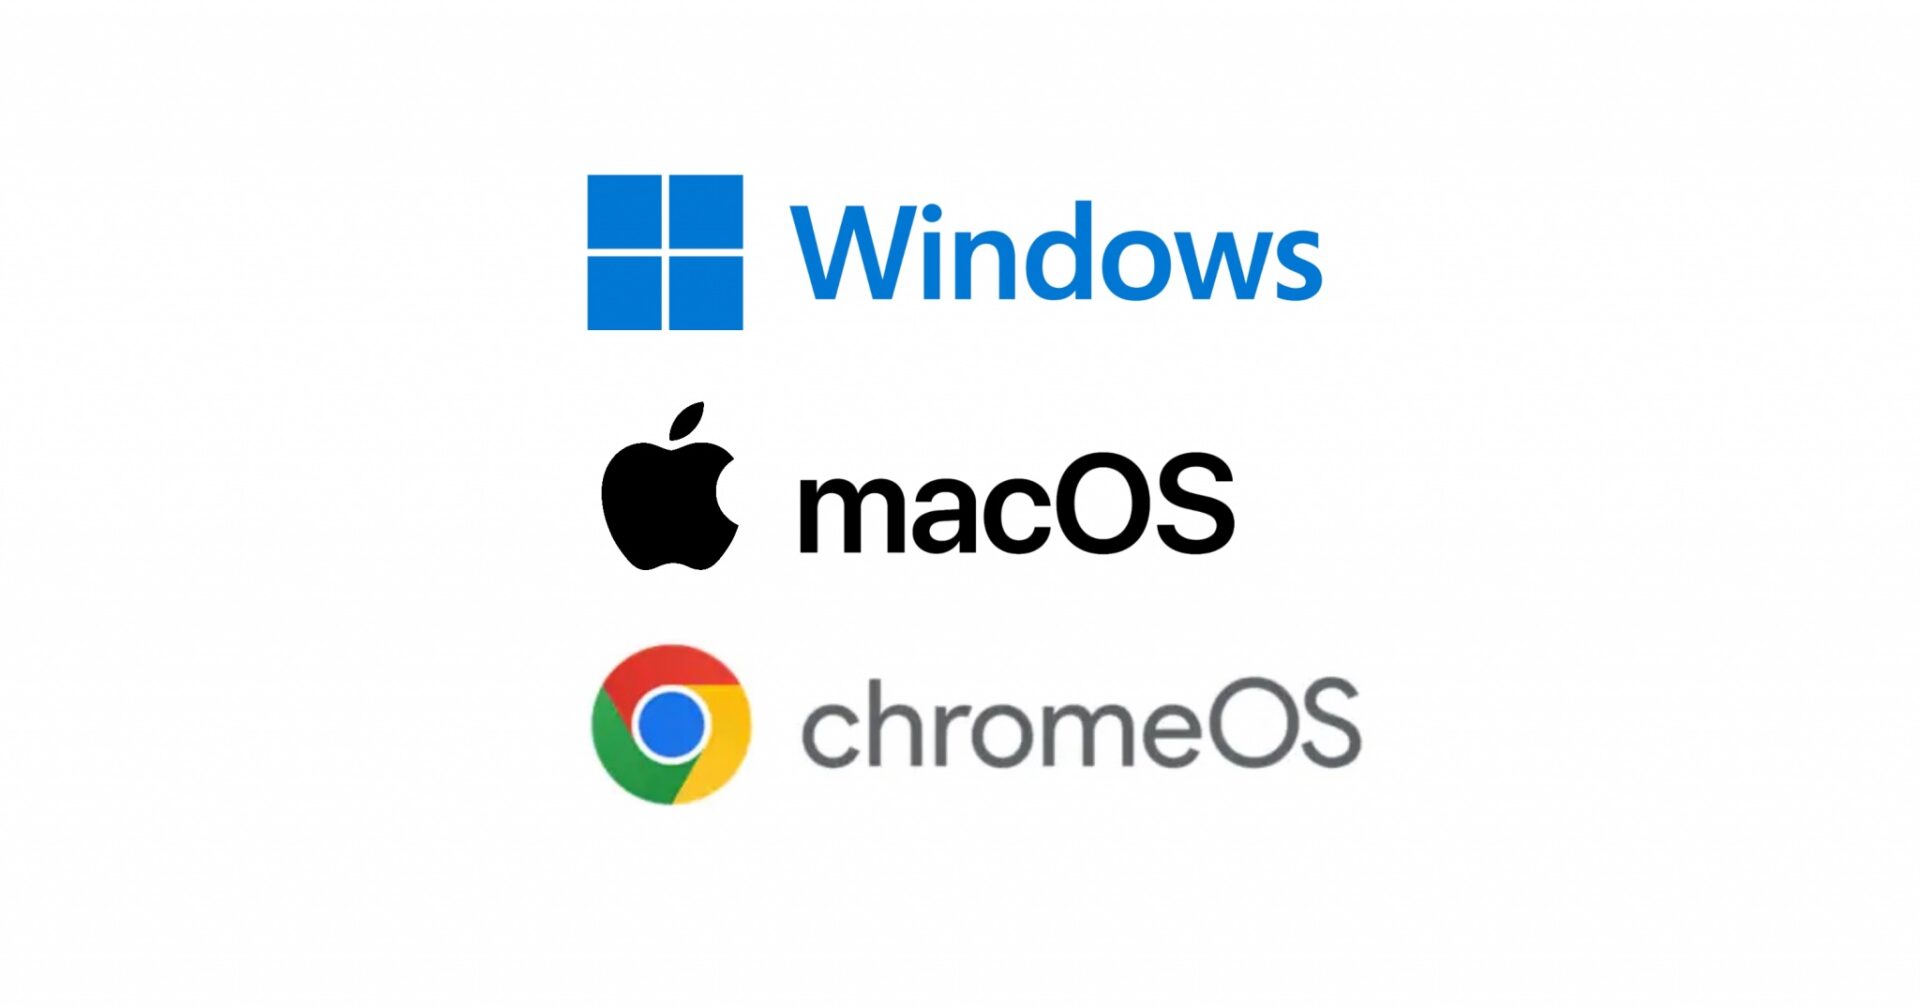 Windows เสียส่วนแบ่งตลาดให้ macOS ในสหรัฐอเมริกาอย่างต่อเนื่อง